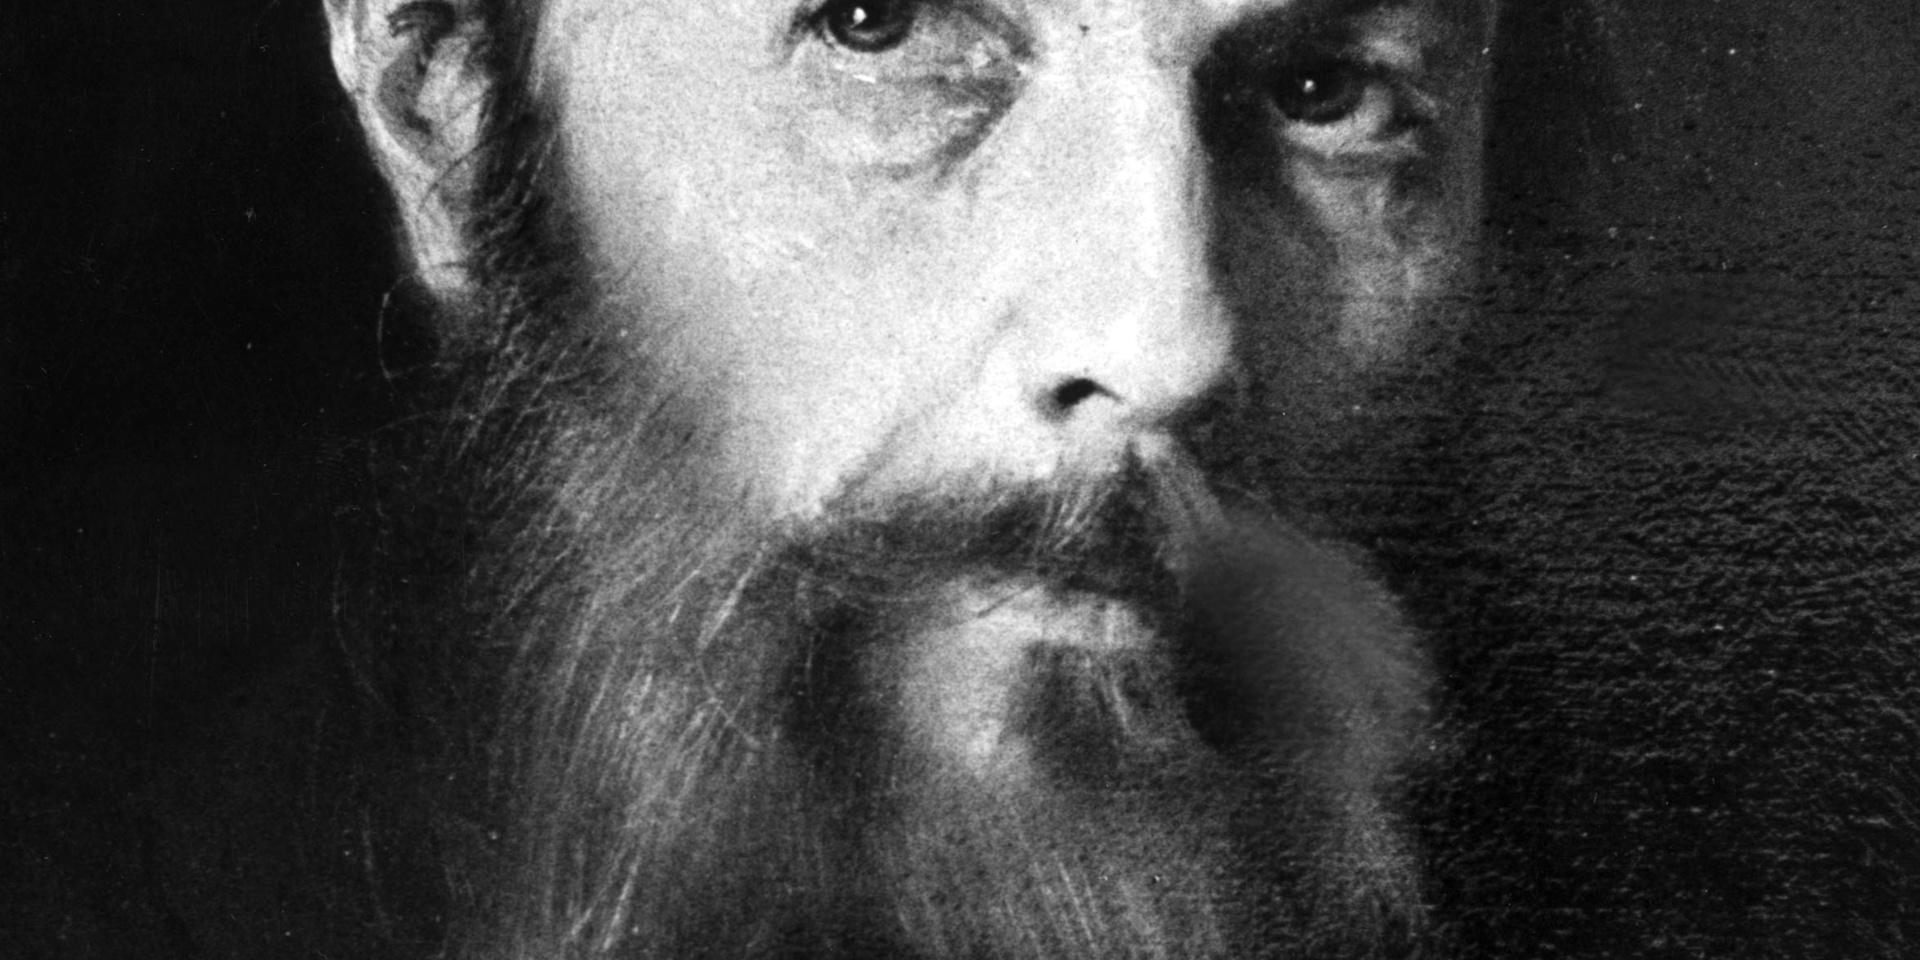 Fjodor Michailovitj Dostojevskij rysk författare målad i olja av M. Stecherbetov 1870-80.